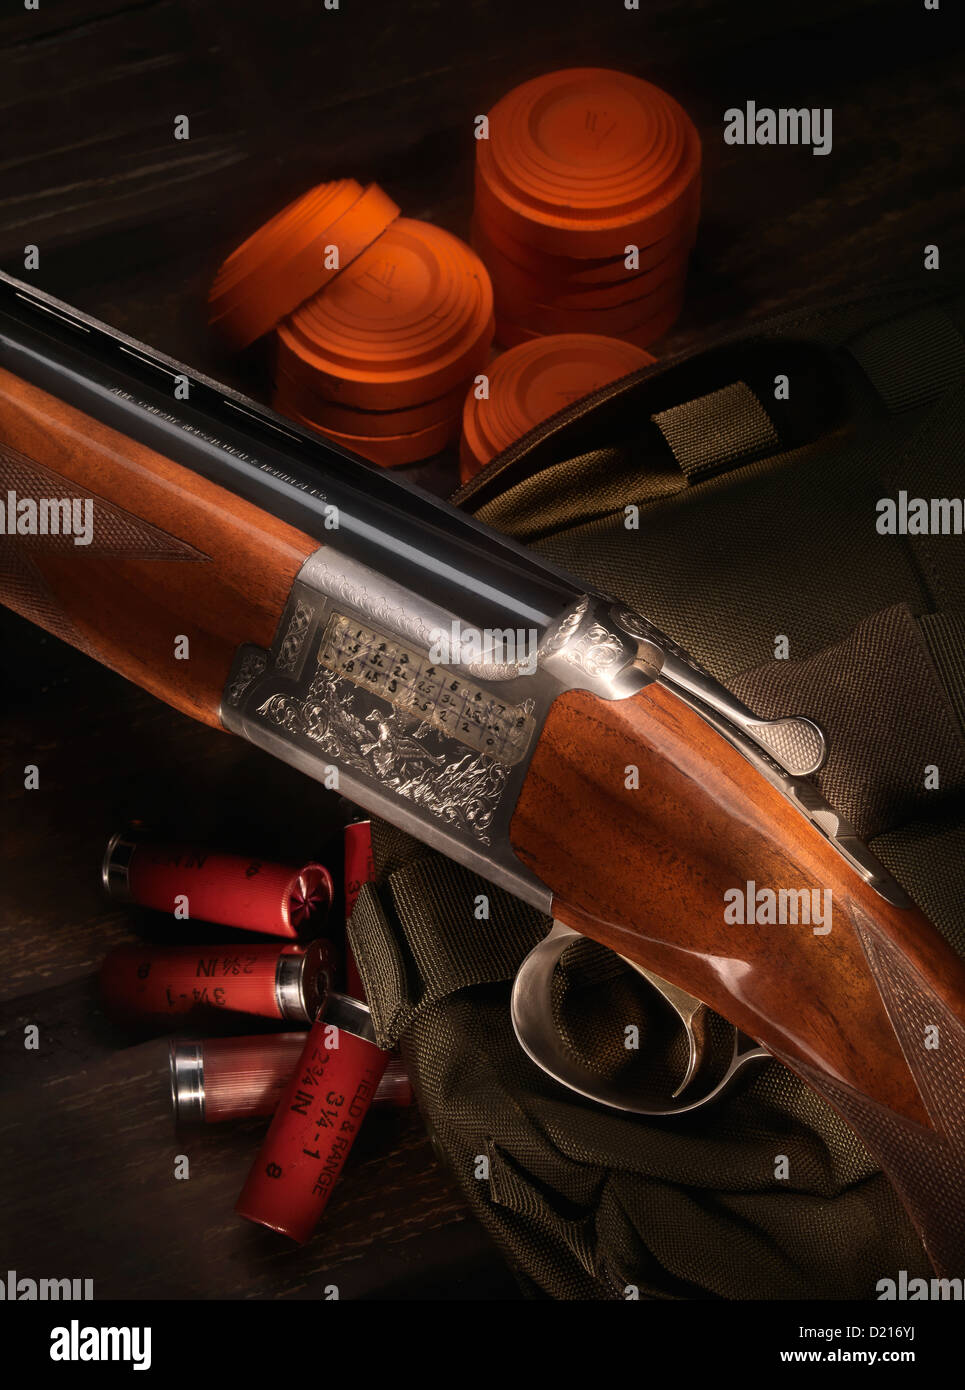 2,991 12 Gauge Shotgun Images, Stock Photos, 3D objects, & Vectors